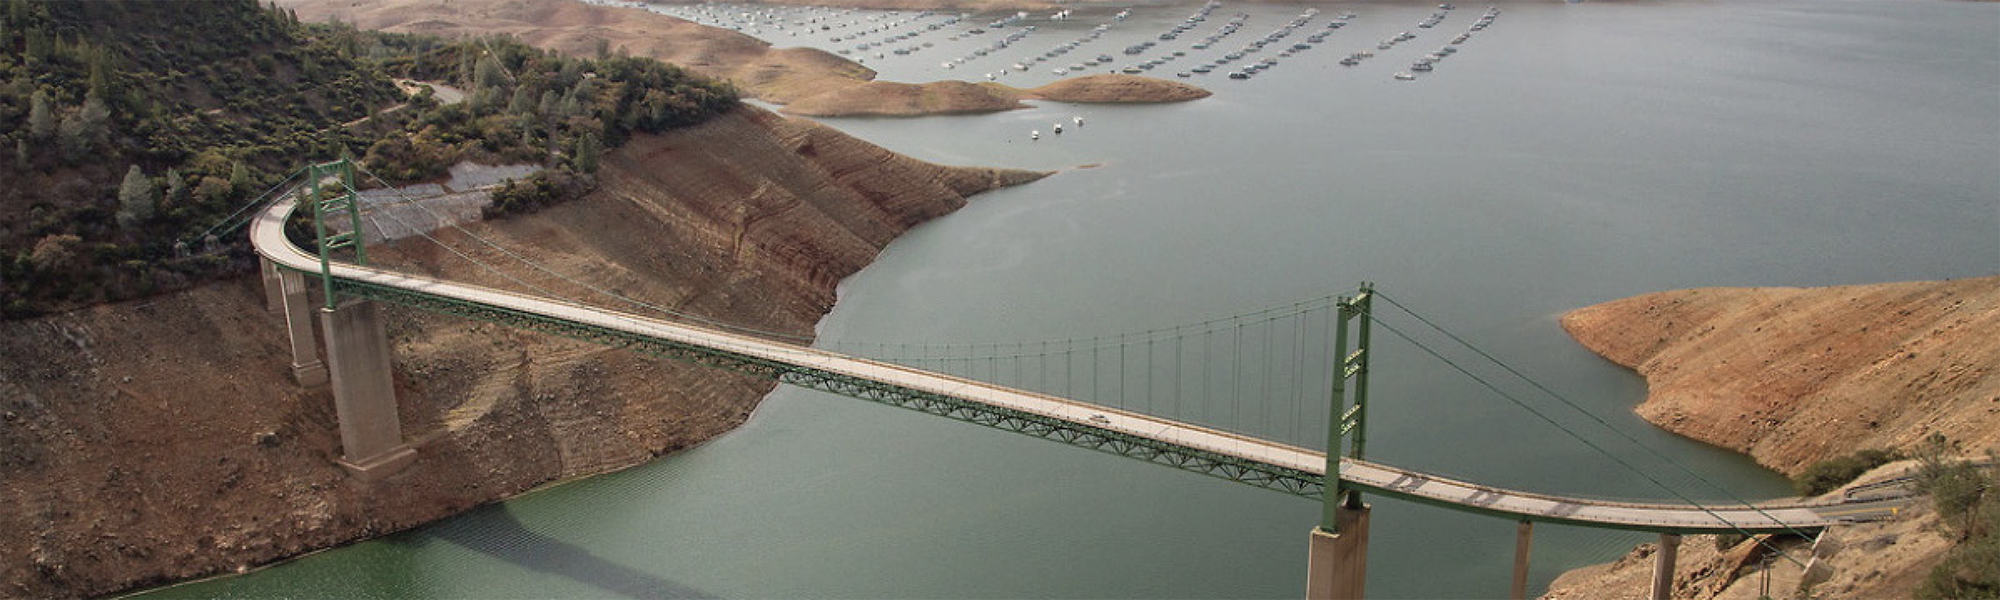 L'usine Ecolab de City of Industry, en Californie, est certifiée comme chef de file de la gestion des ressources hydriques